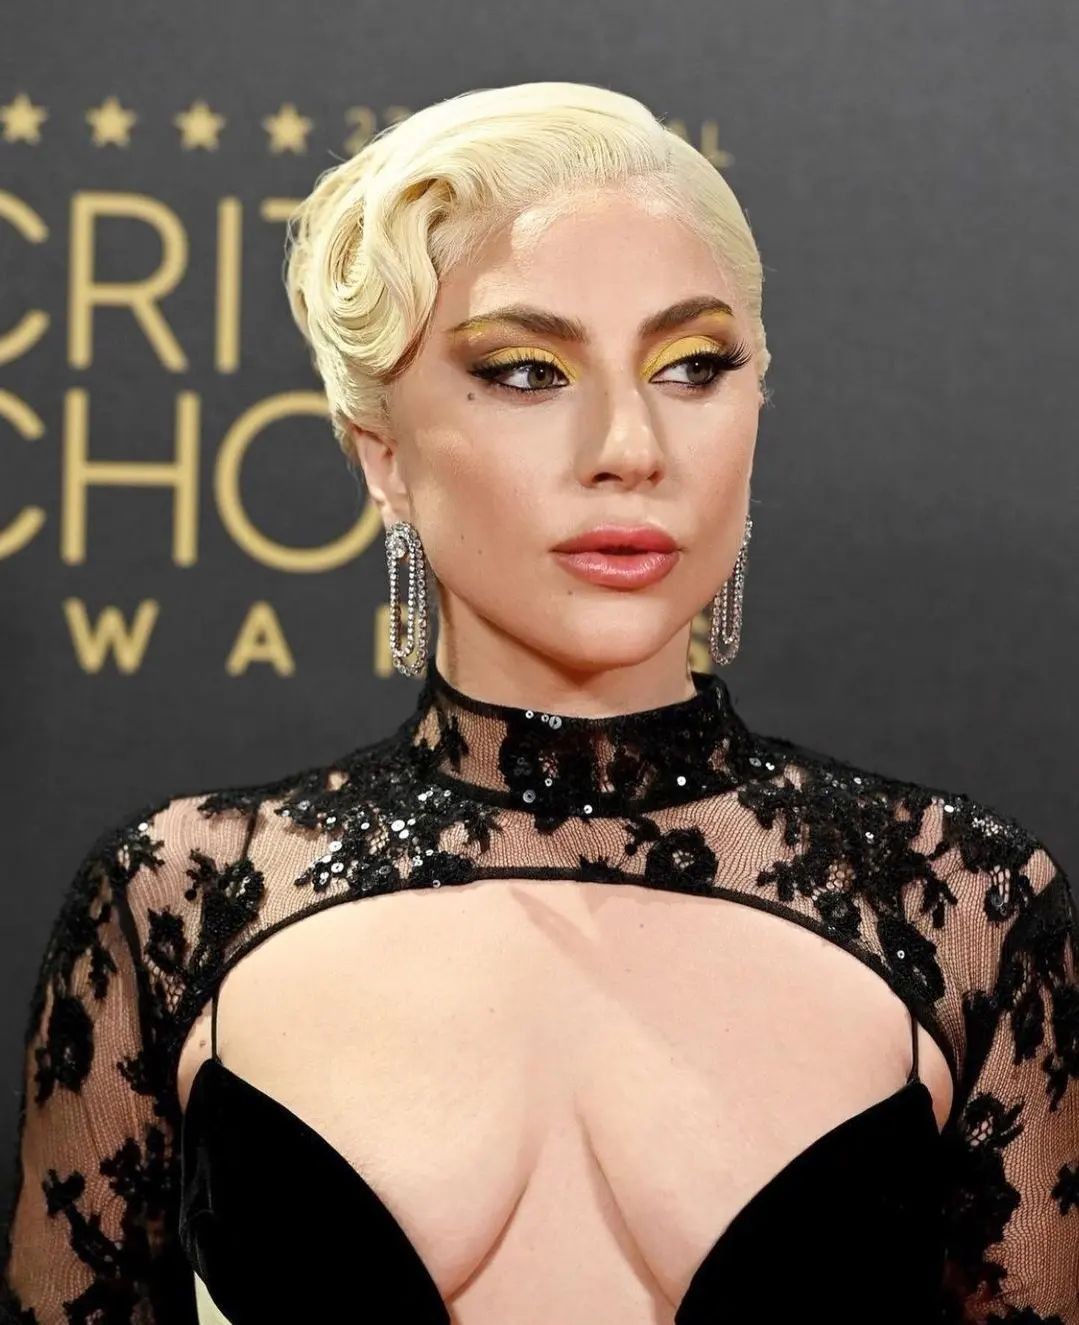 Lady Gaga Tits TheFappening.Pro 4 - Lady Gaga Big Tits At The Critics Choice Awards (7 Photos)